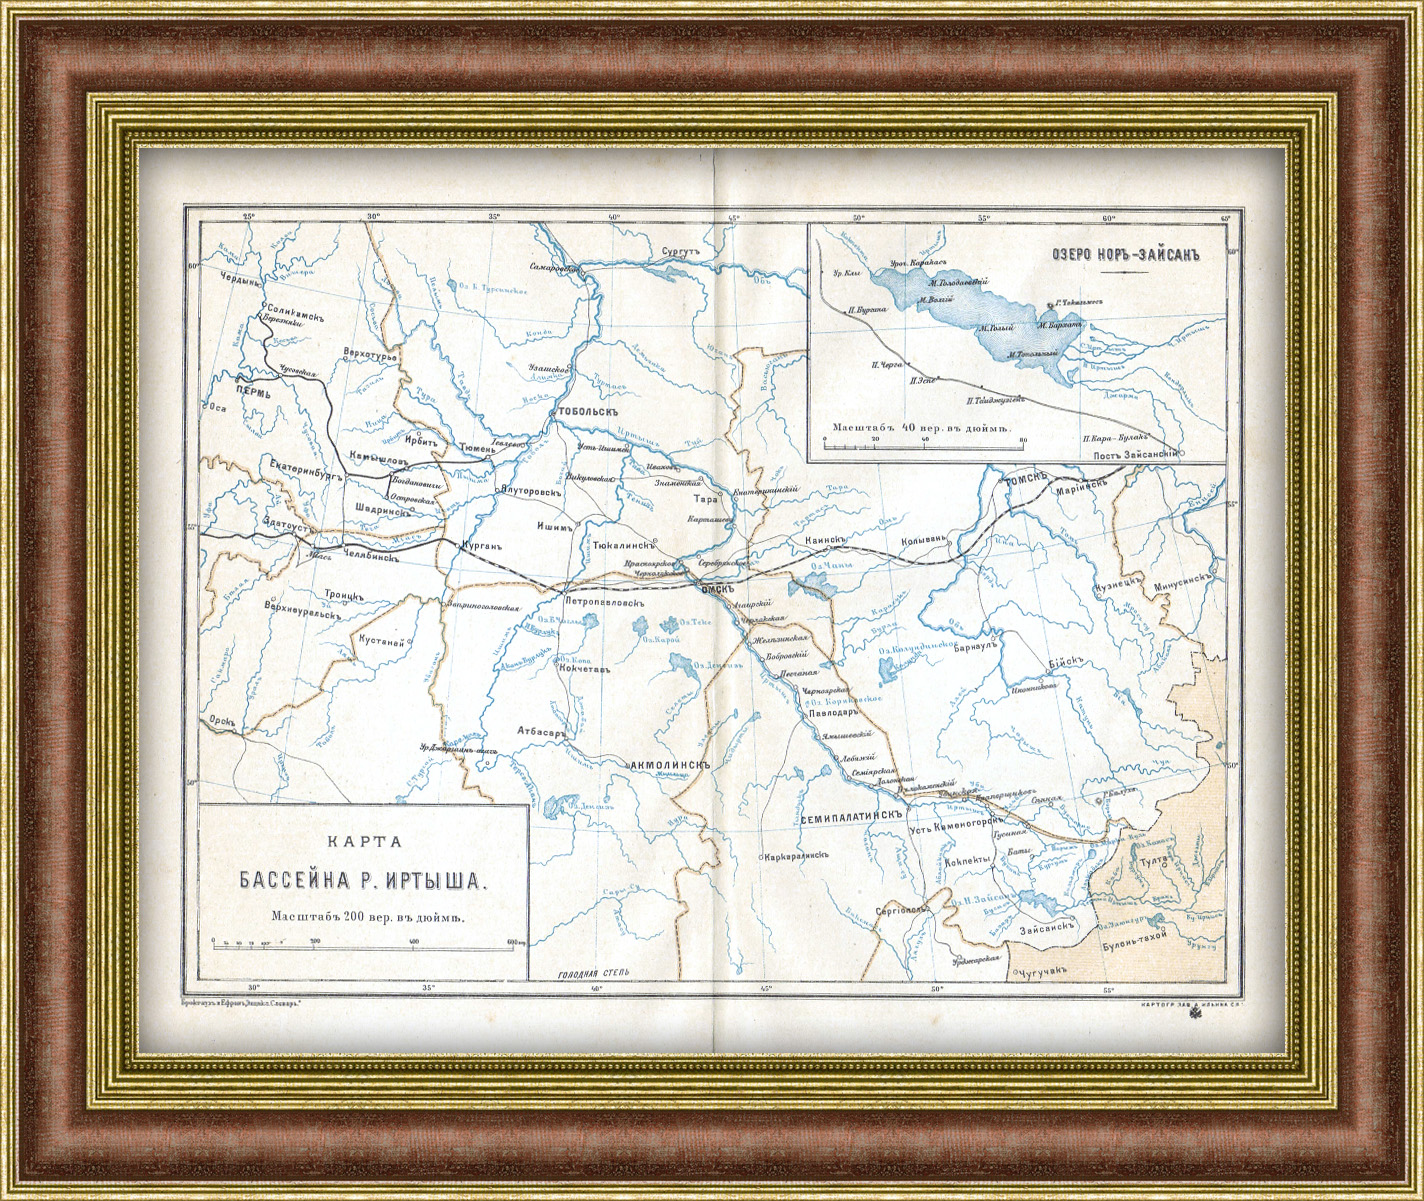 фото Казахстан и россия: карта бассейна реки иртыш, 1894 год rarita